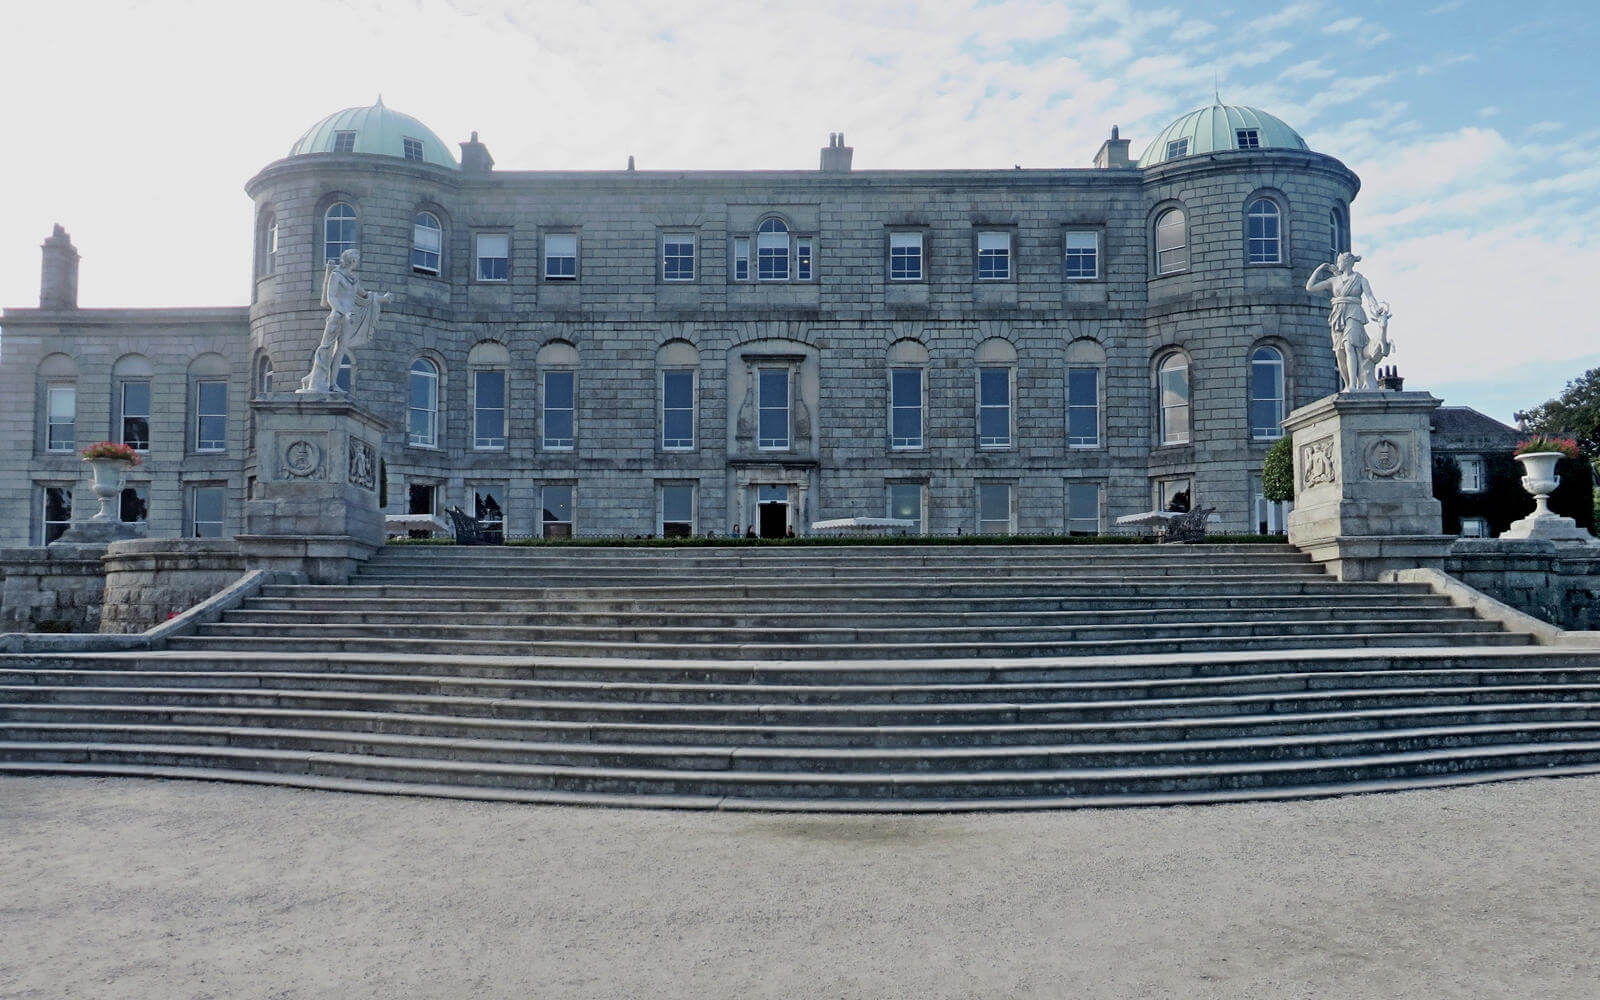 Viele Treppenstufen führen zum dem herrschaftlichen Anwesen des Powerscourt Estate in Enniskerry, Irland.